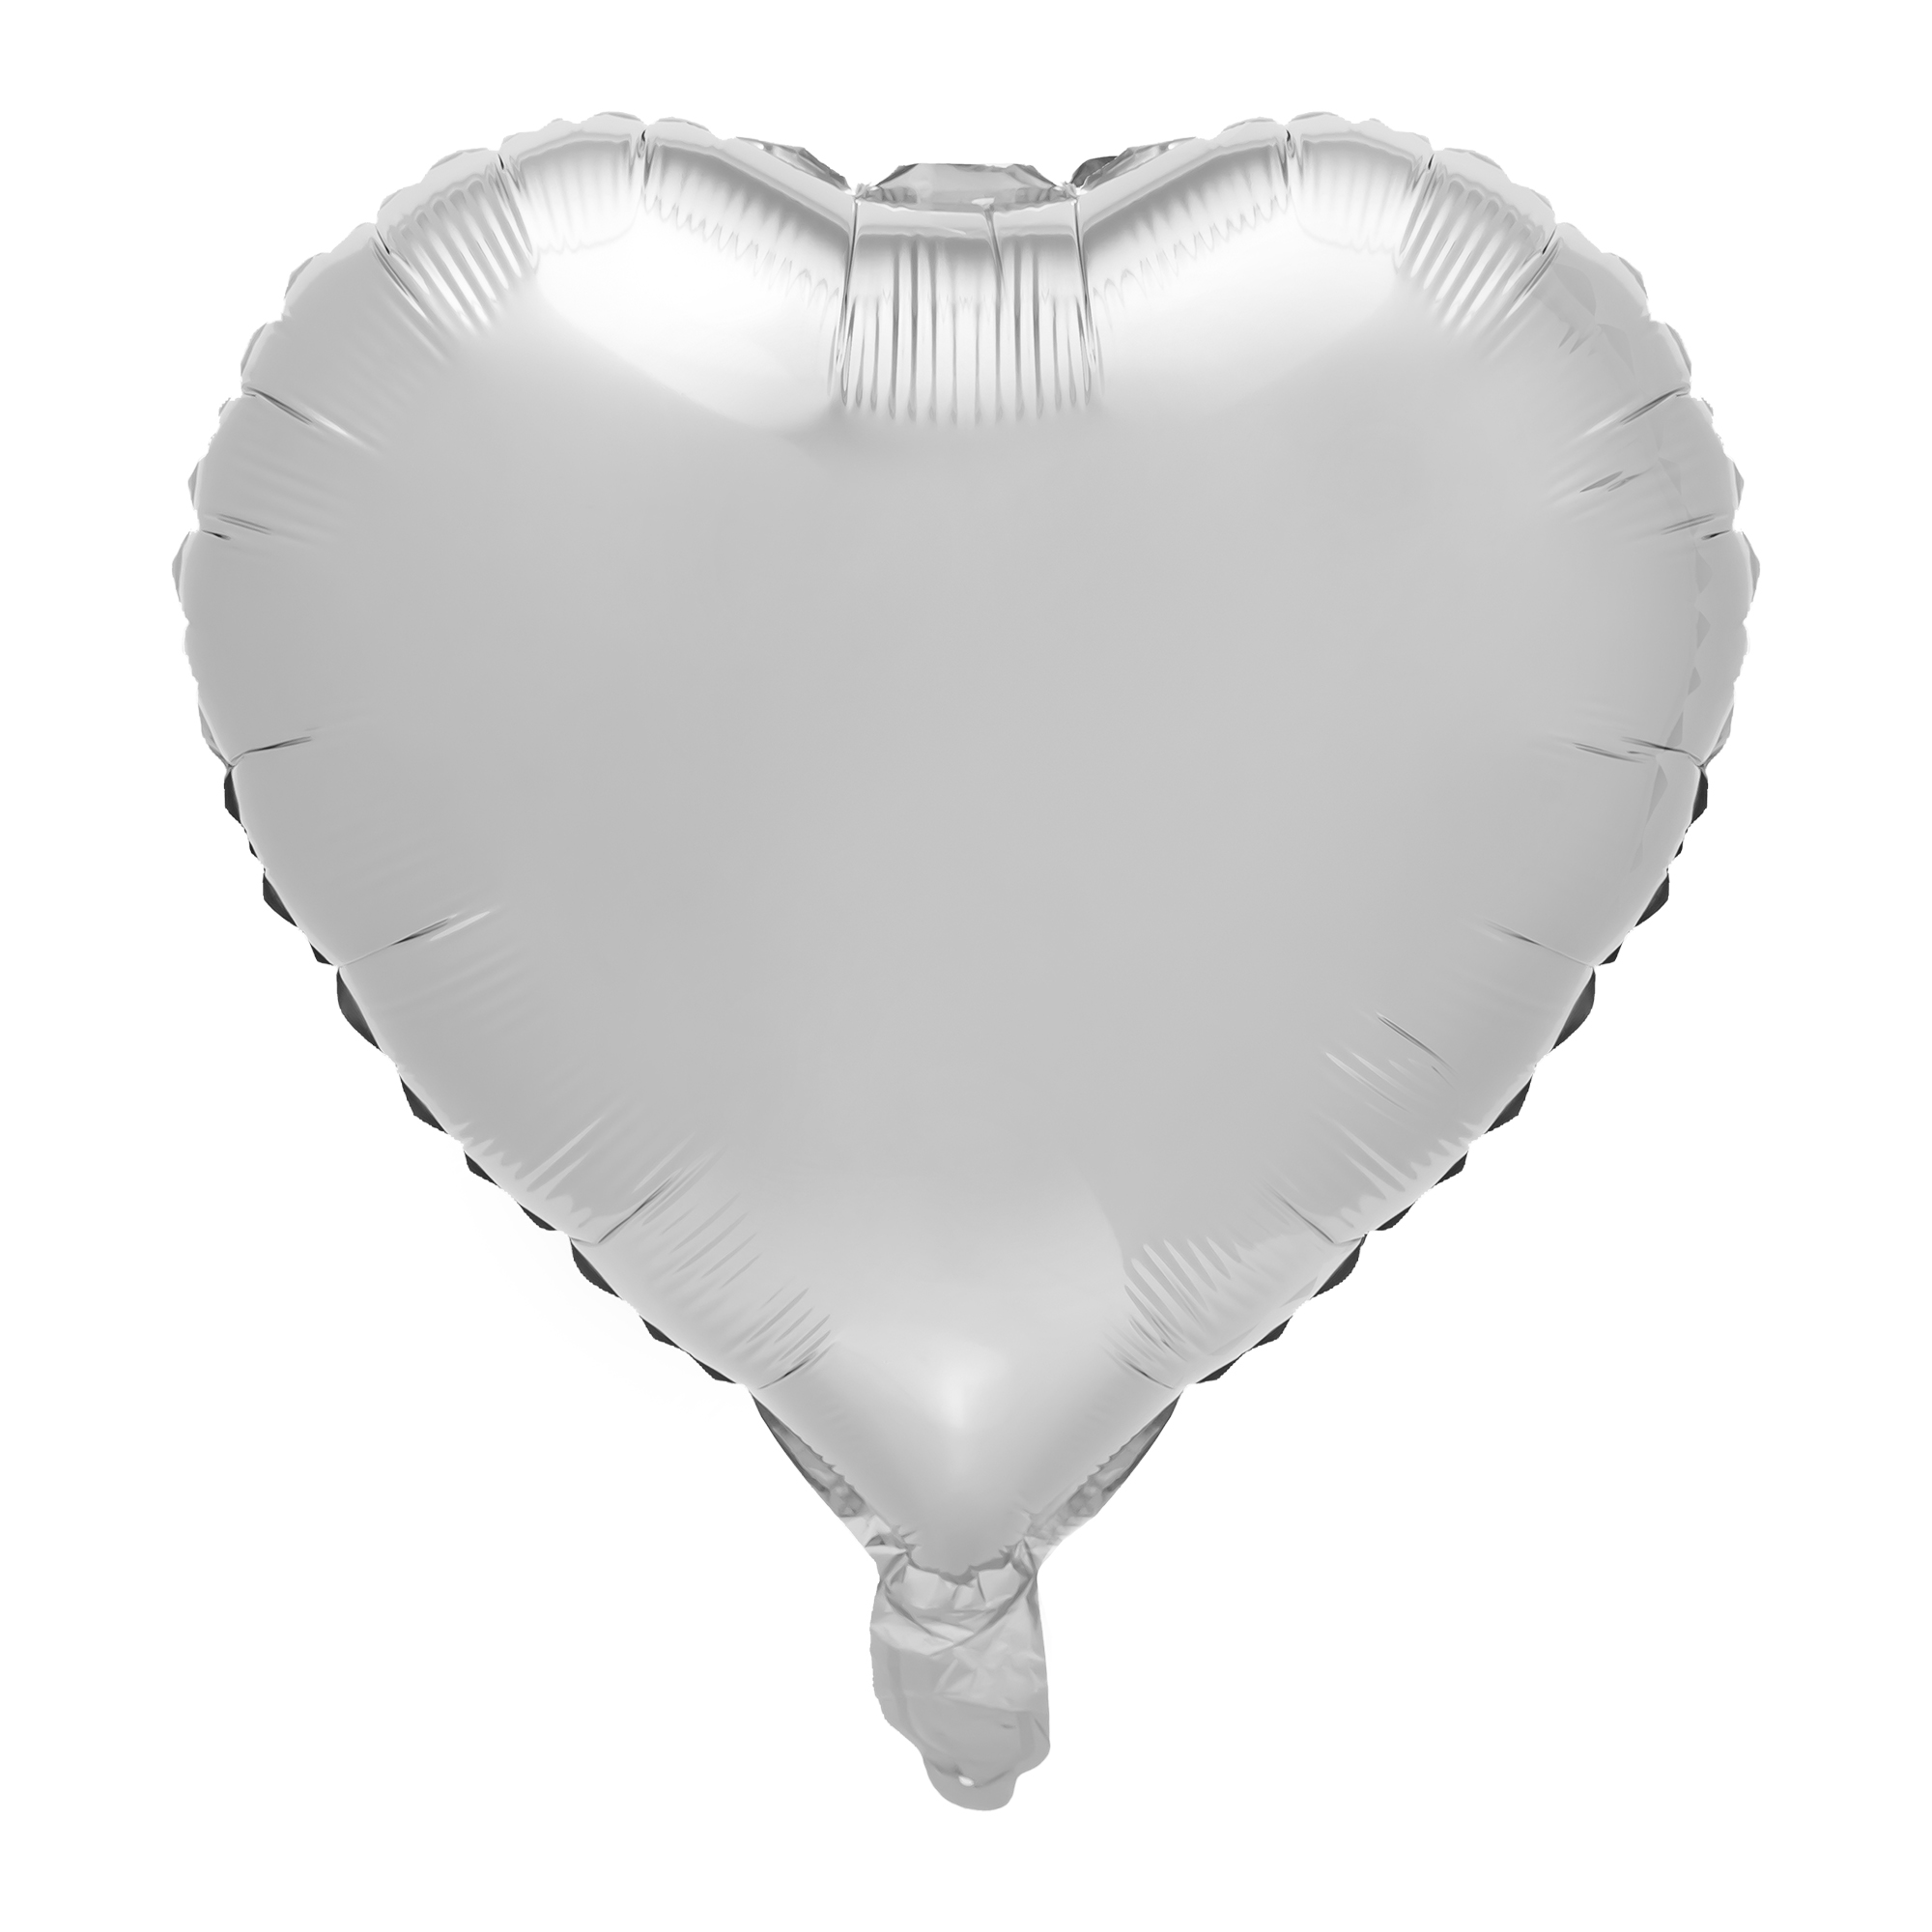 18" Heart Mylar Balloon 1pc/bag - Silver